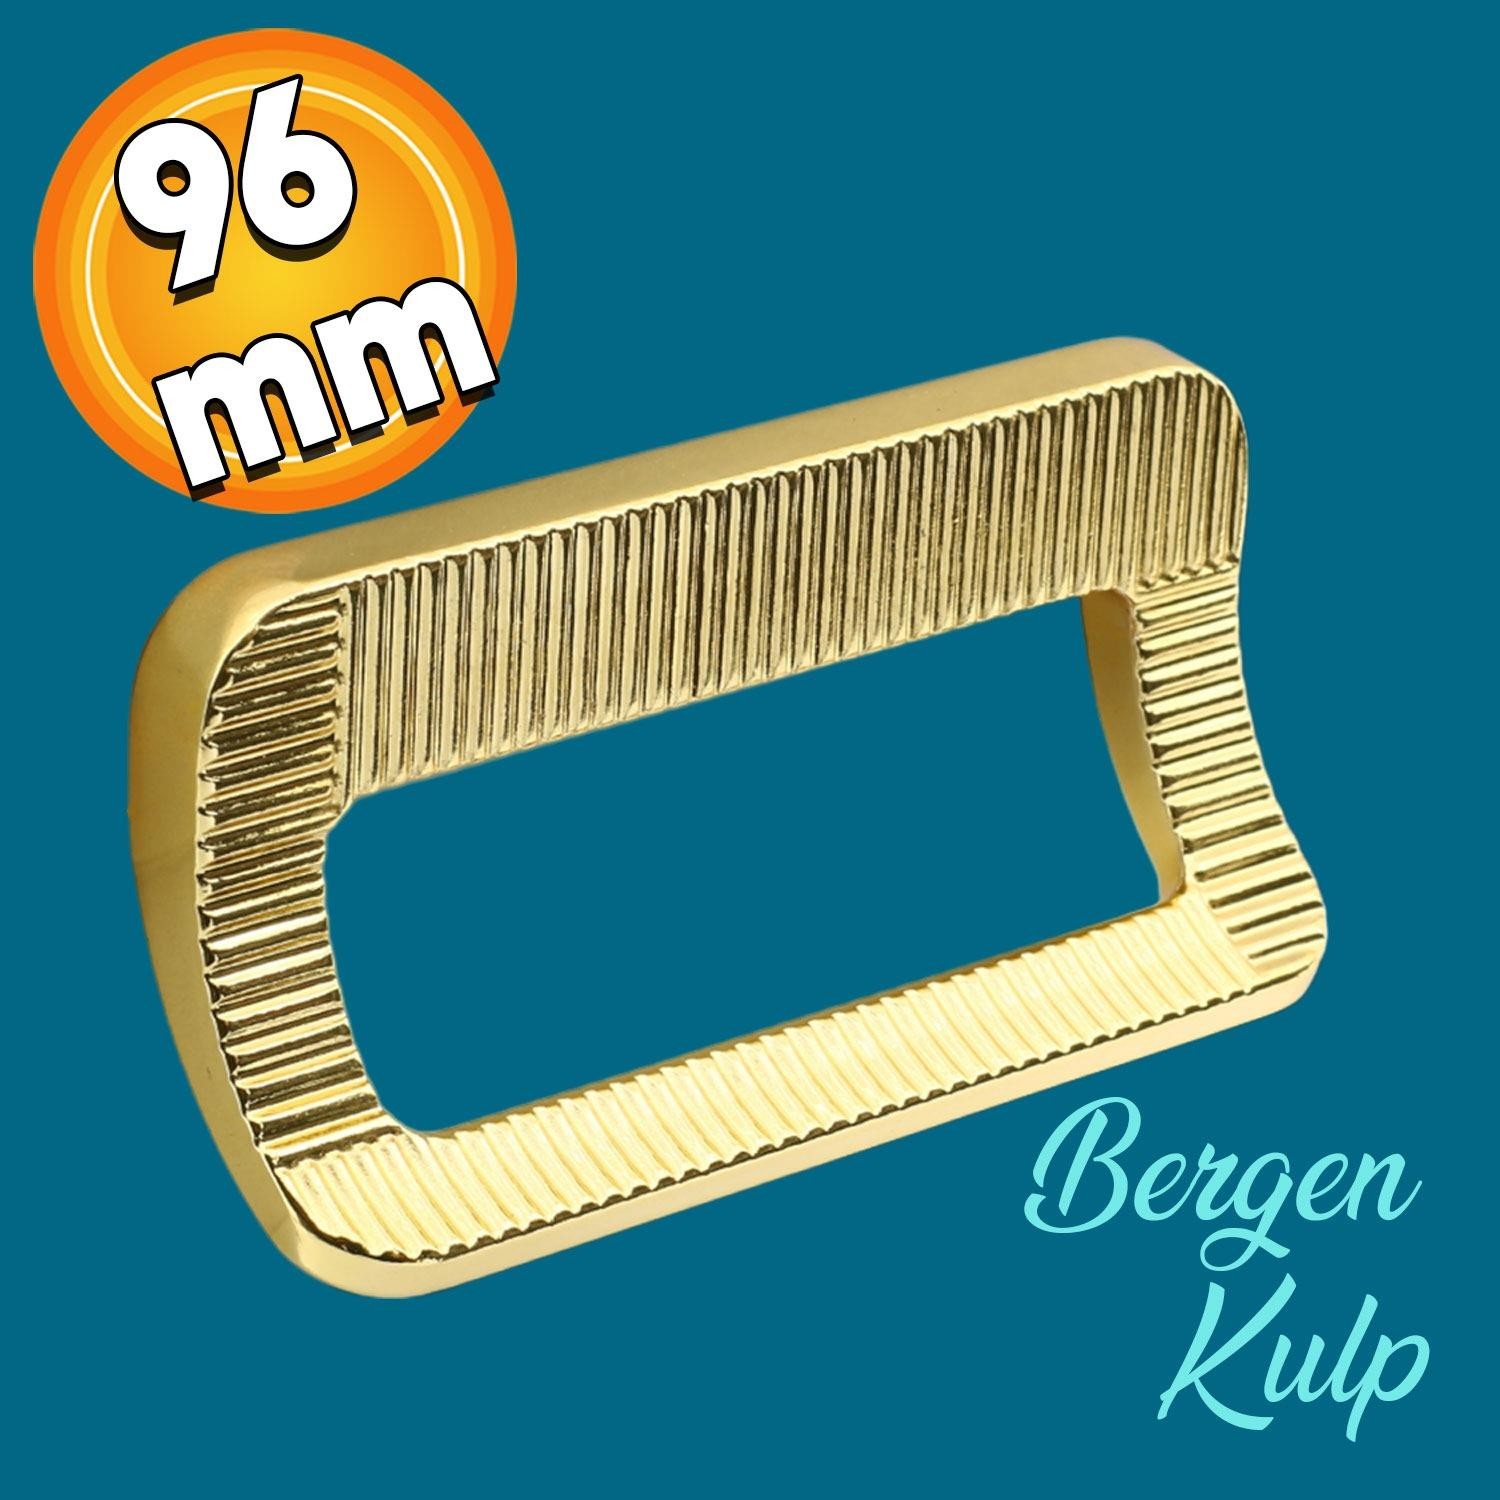 Bergen Metax Desenli Mobilya Mutfak Dolabı Çekmece Dolap Kapak Kulpu Kulbu Metal Gold Altın 96 mm